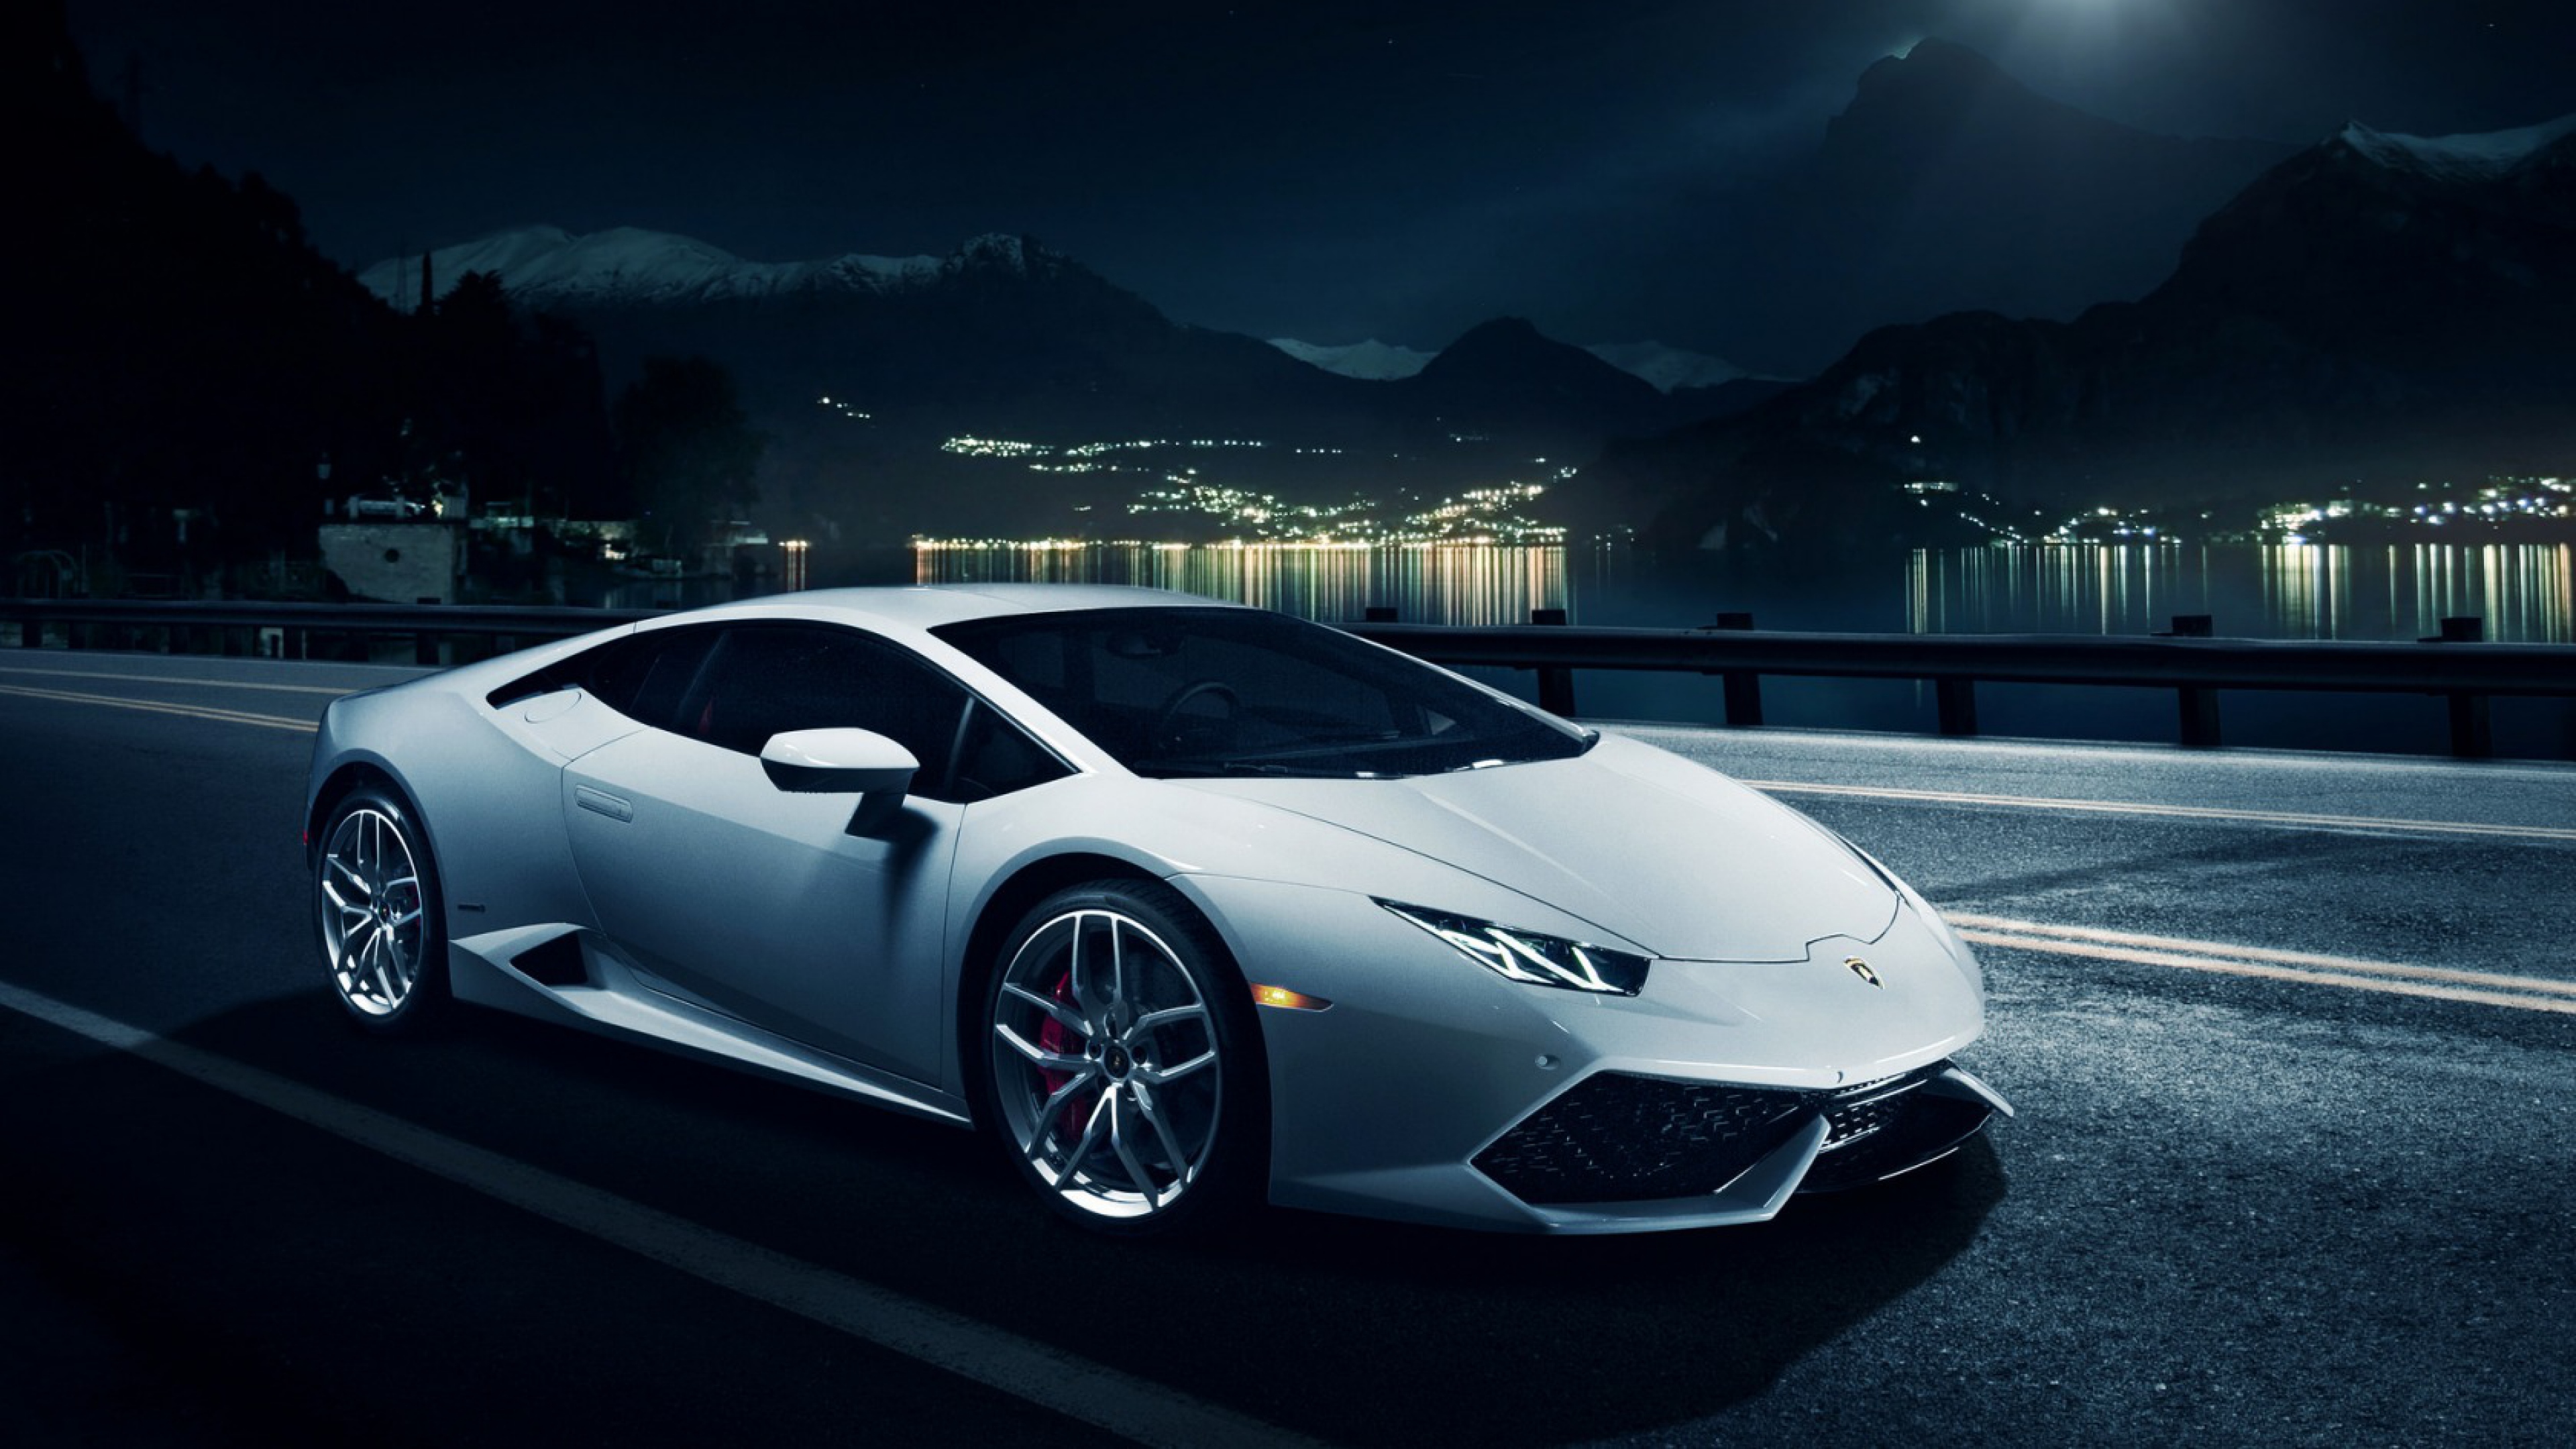 Free download wallpaper Lamborghini, Car, Vehicles, Lamborghini Huracán on your PC desktop